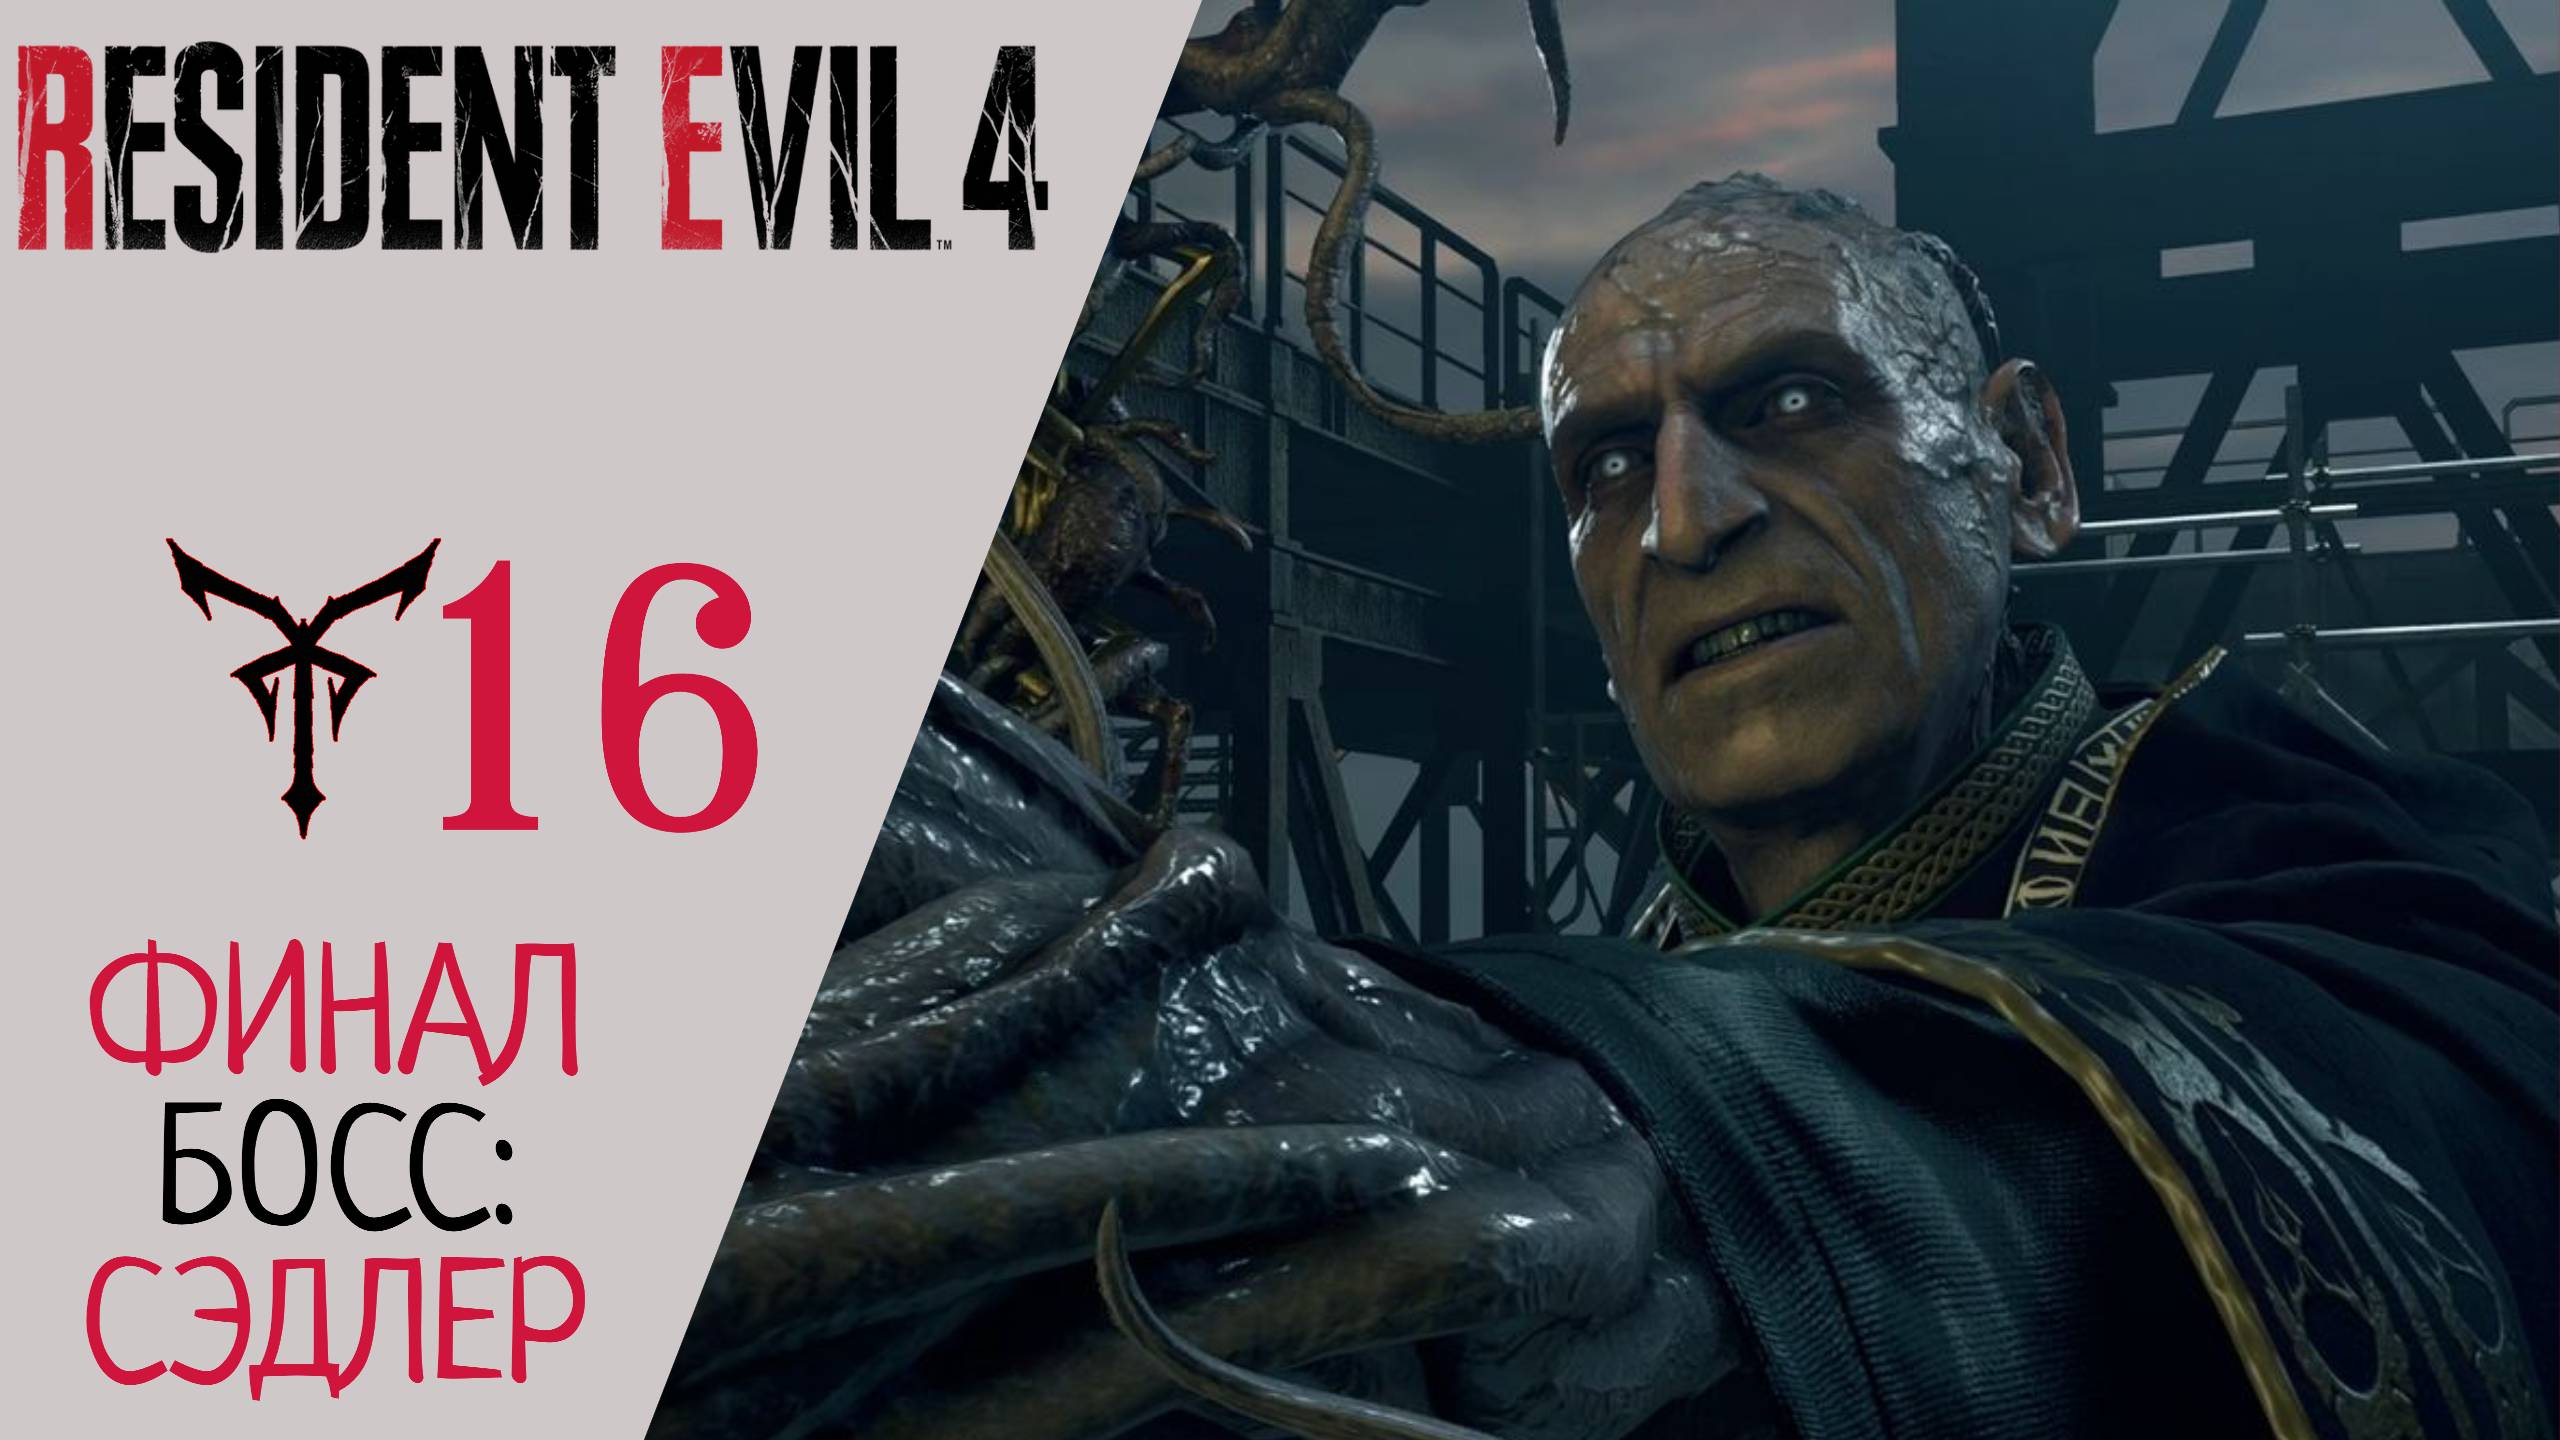 ? Прохождение Resident Evil 4 Remake Глава 16 Финал, Финальный Босс Адам Сэдлер | Резидент Эвил 4